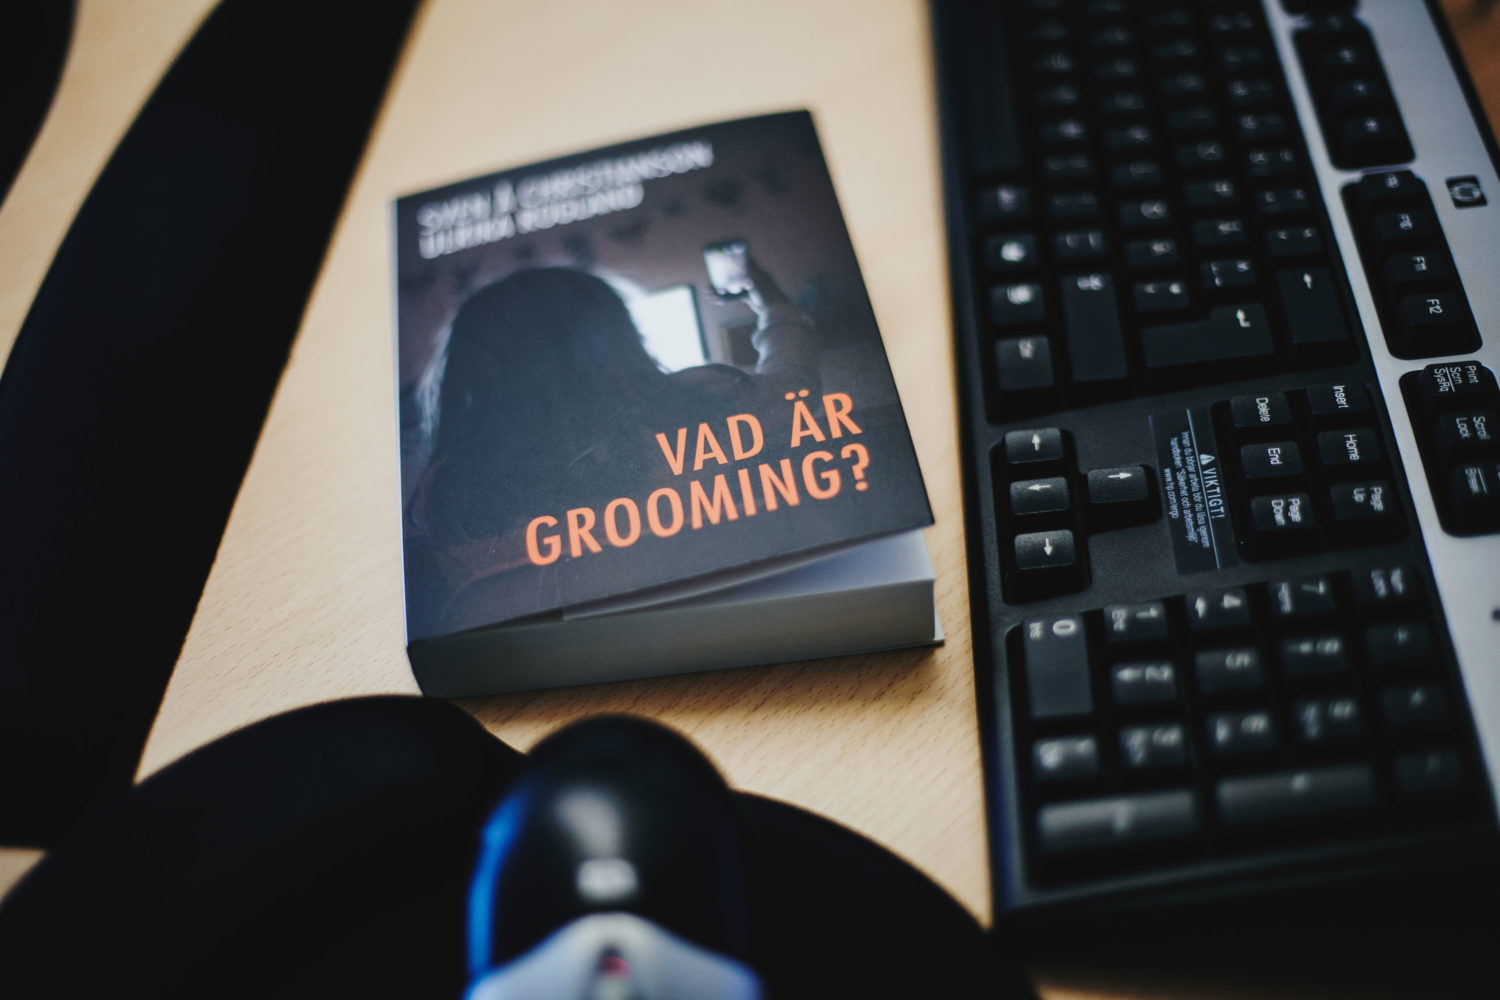 ”Vad är grooming?”